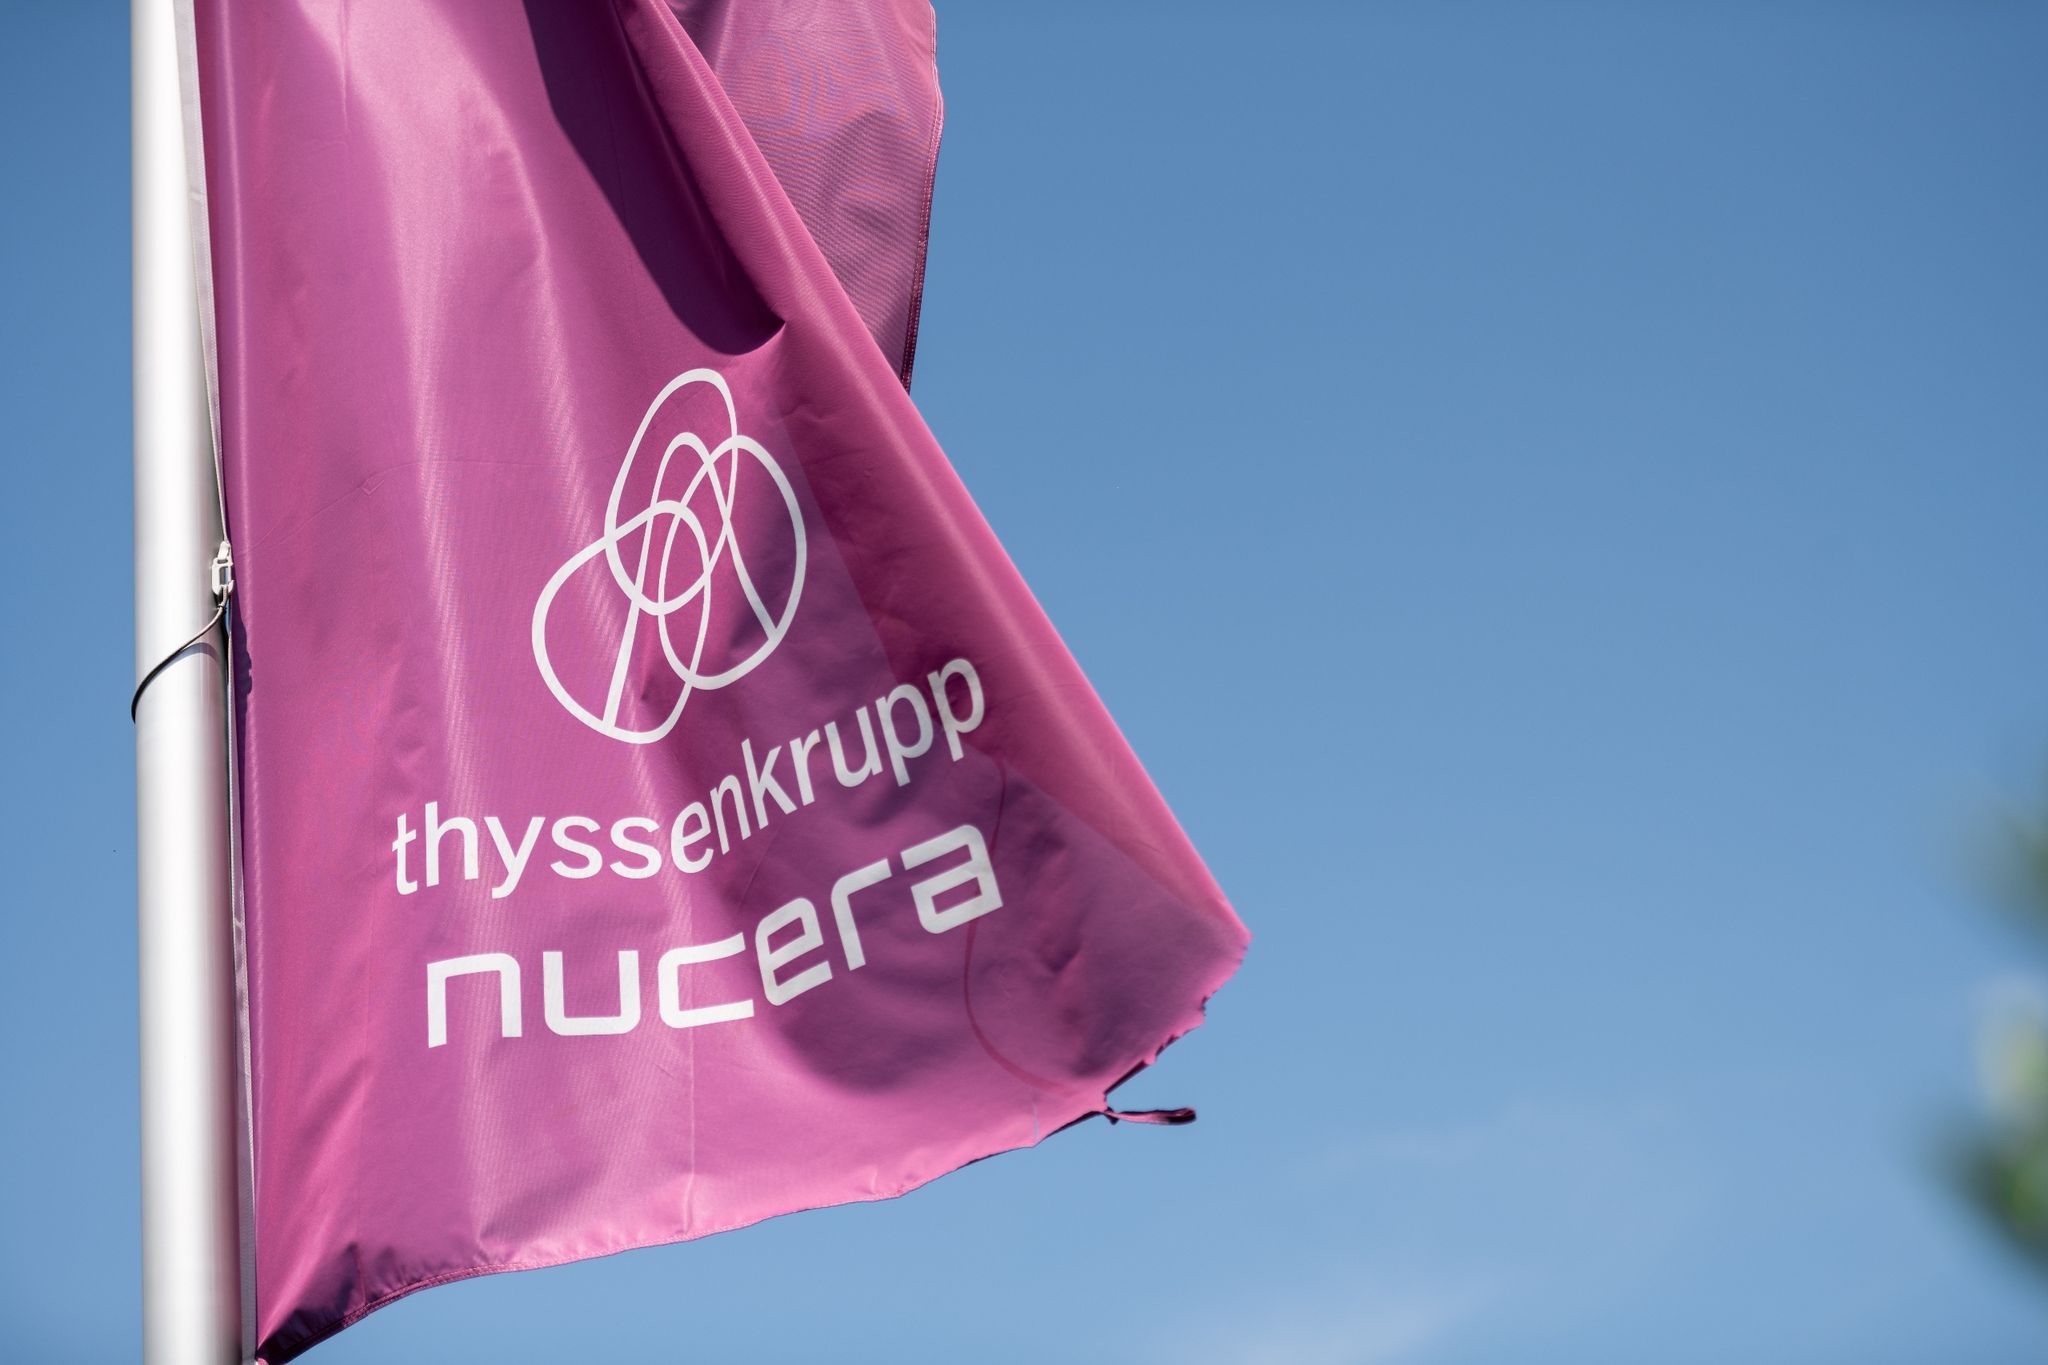 Auf einer Fahne steht „Thyssenkrupp Nucera“.